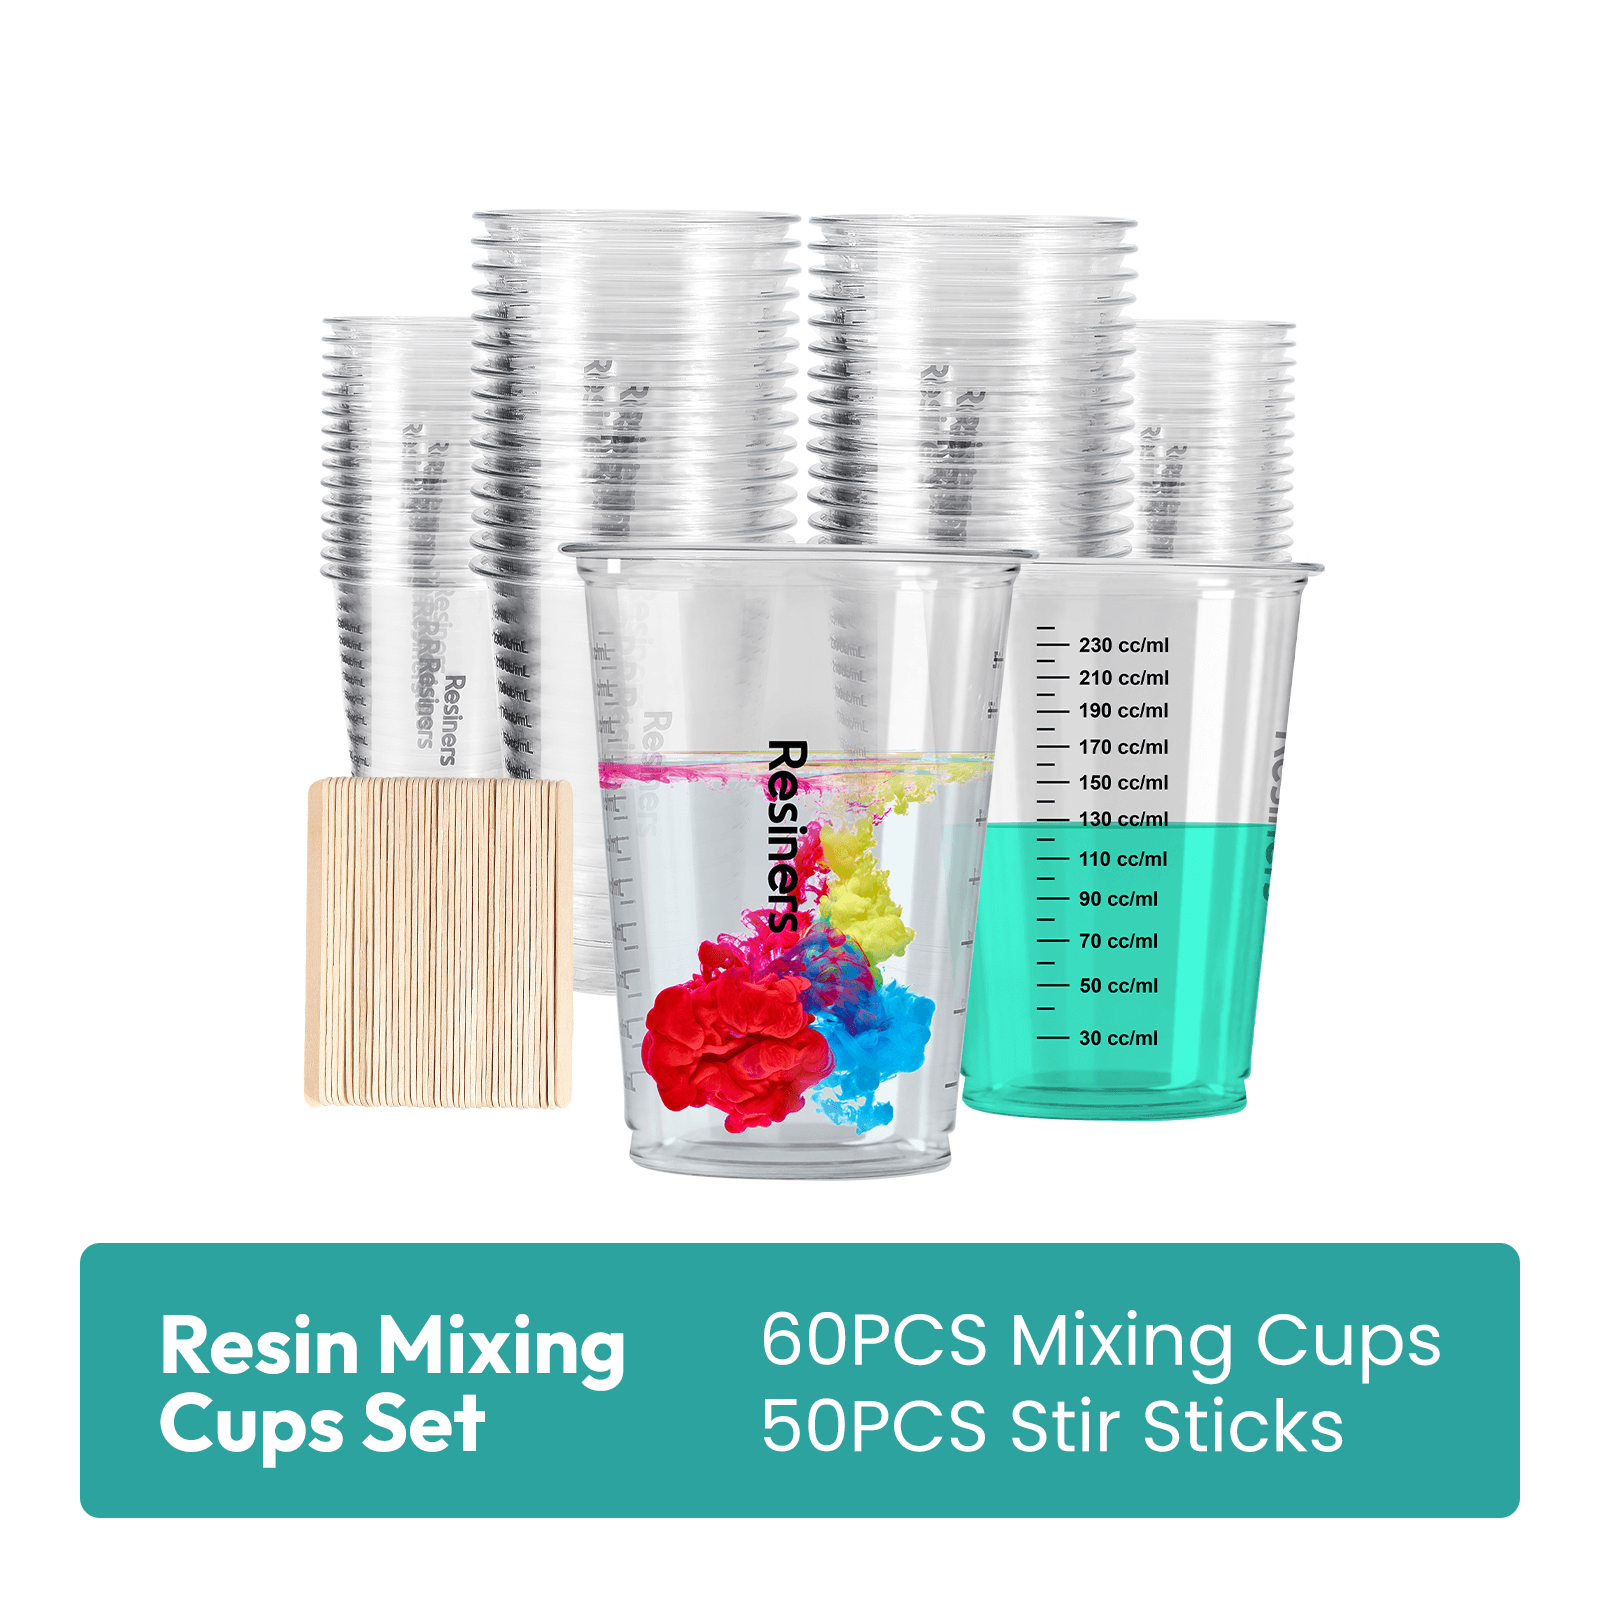 Resiners® 26 Colors Mica Powder Set, 0.175oz(5g)/Bottle, Pigments